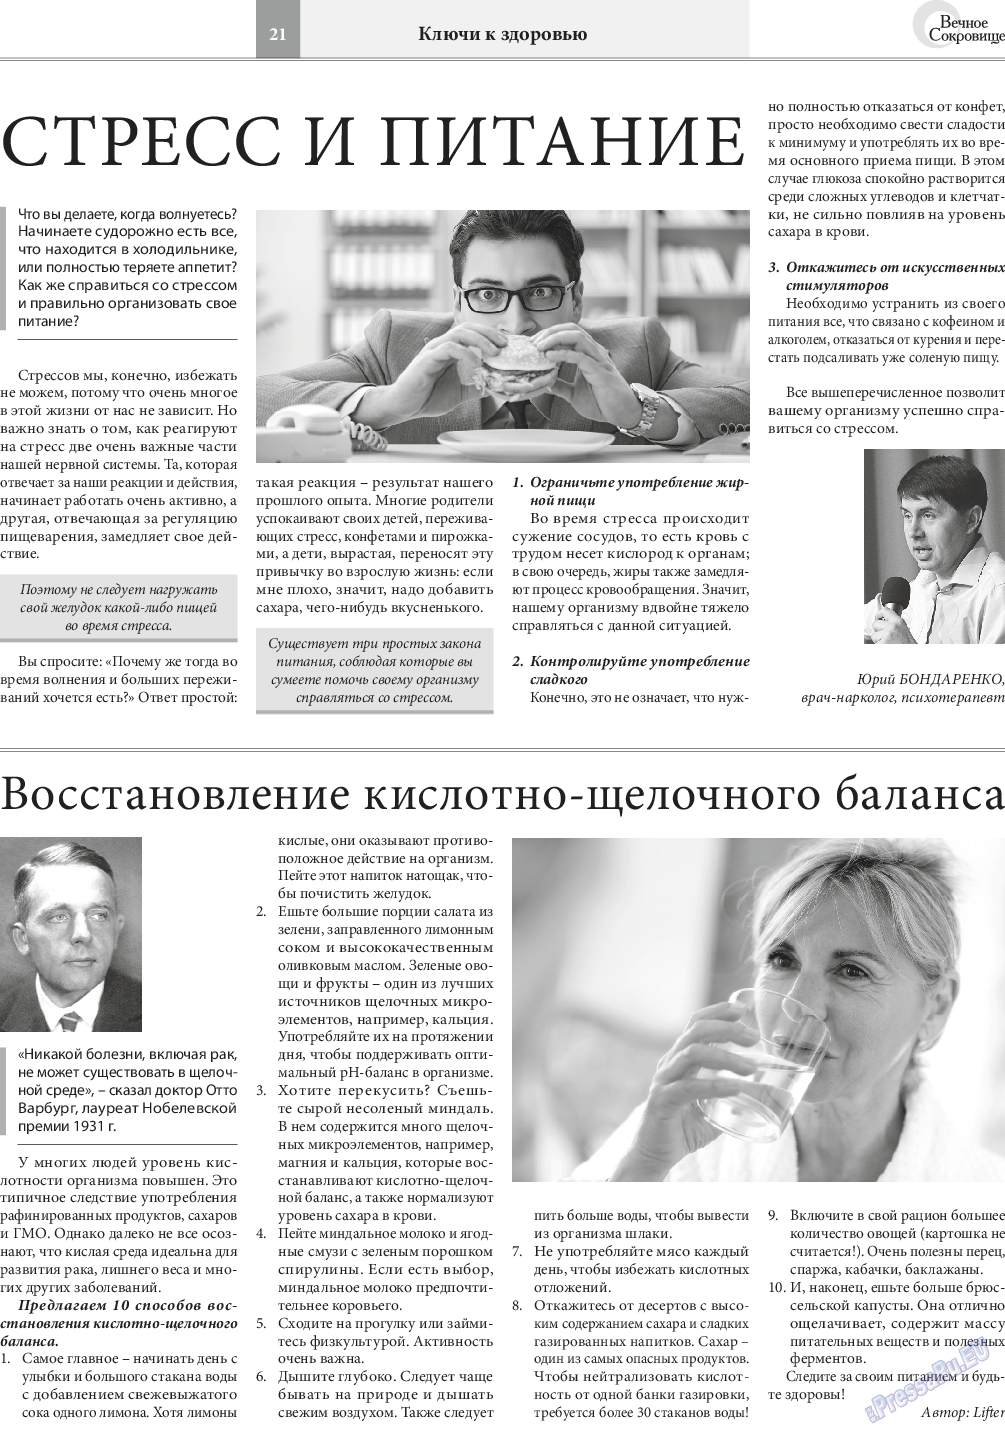 Вечное сокровище, газета. 2017 №4 стр.21